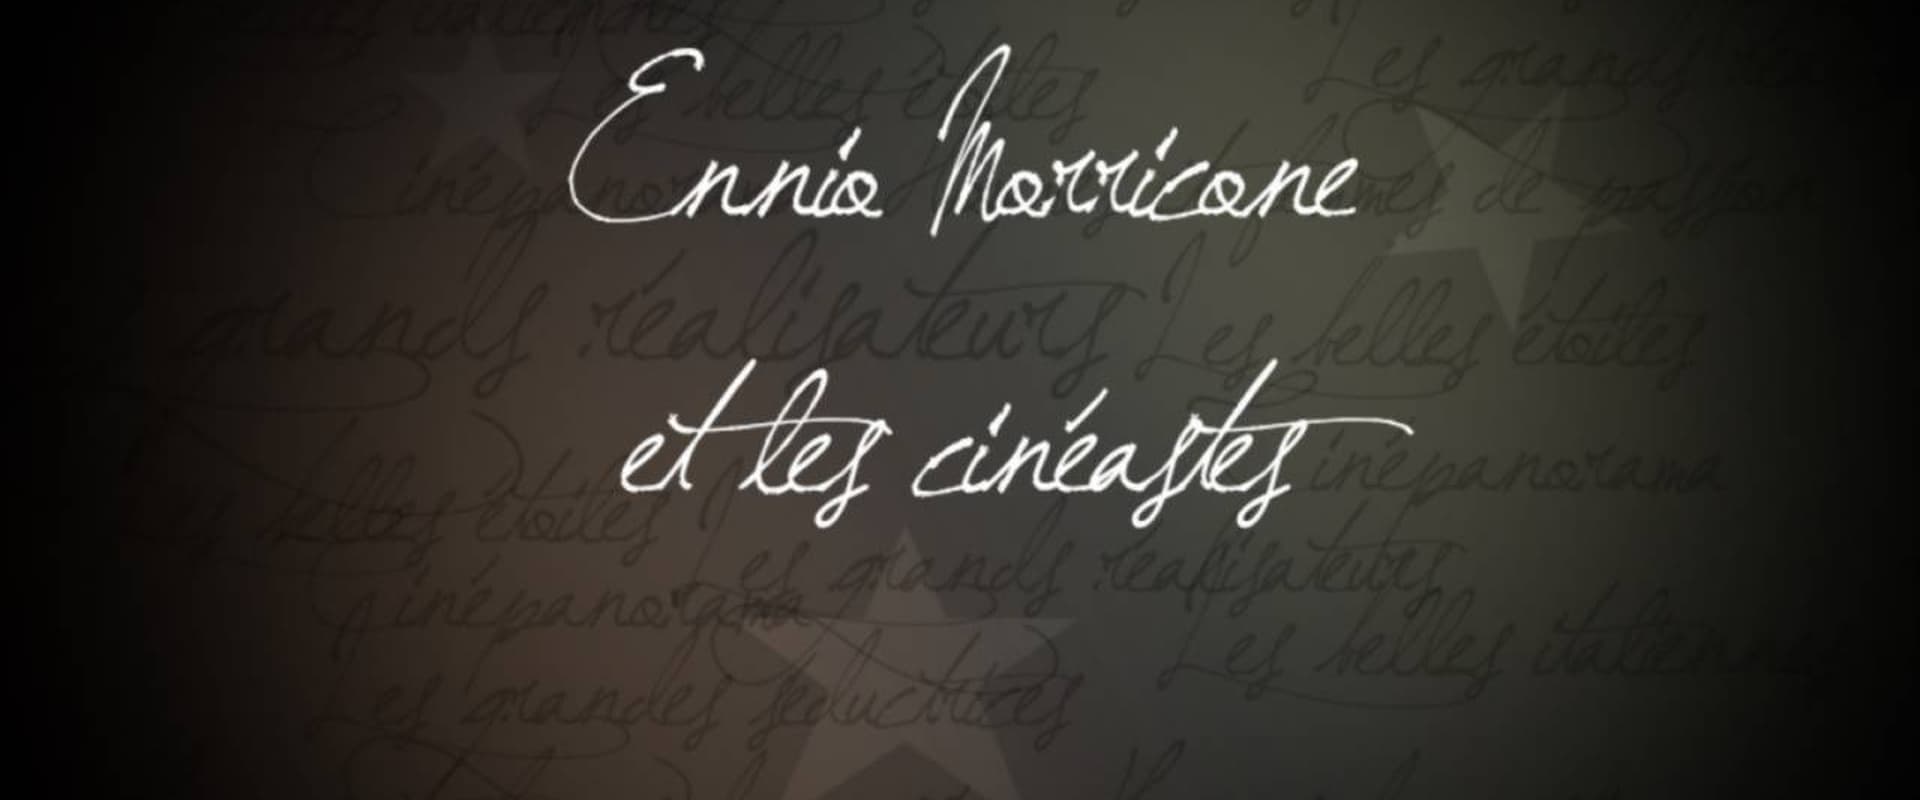 Ennio Morricone et les cinéastes